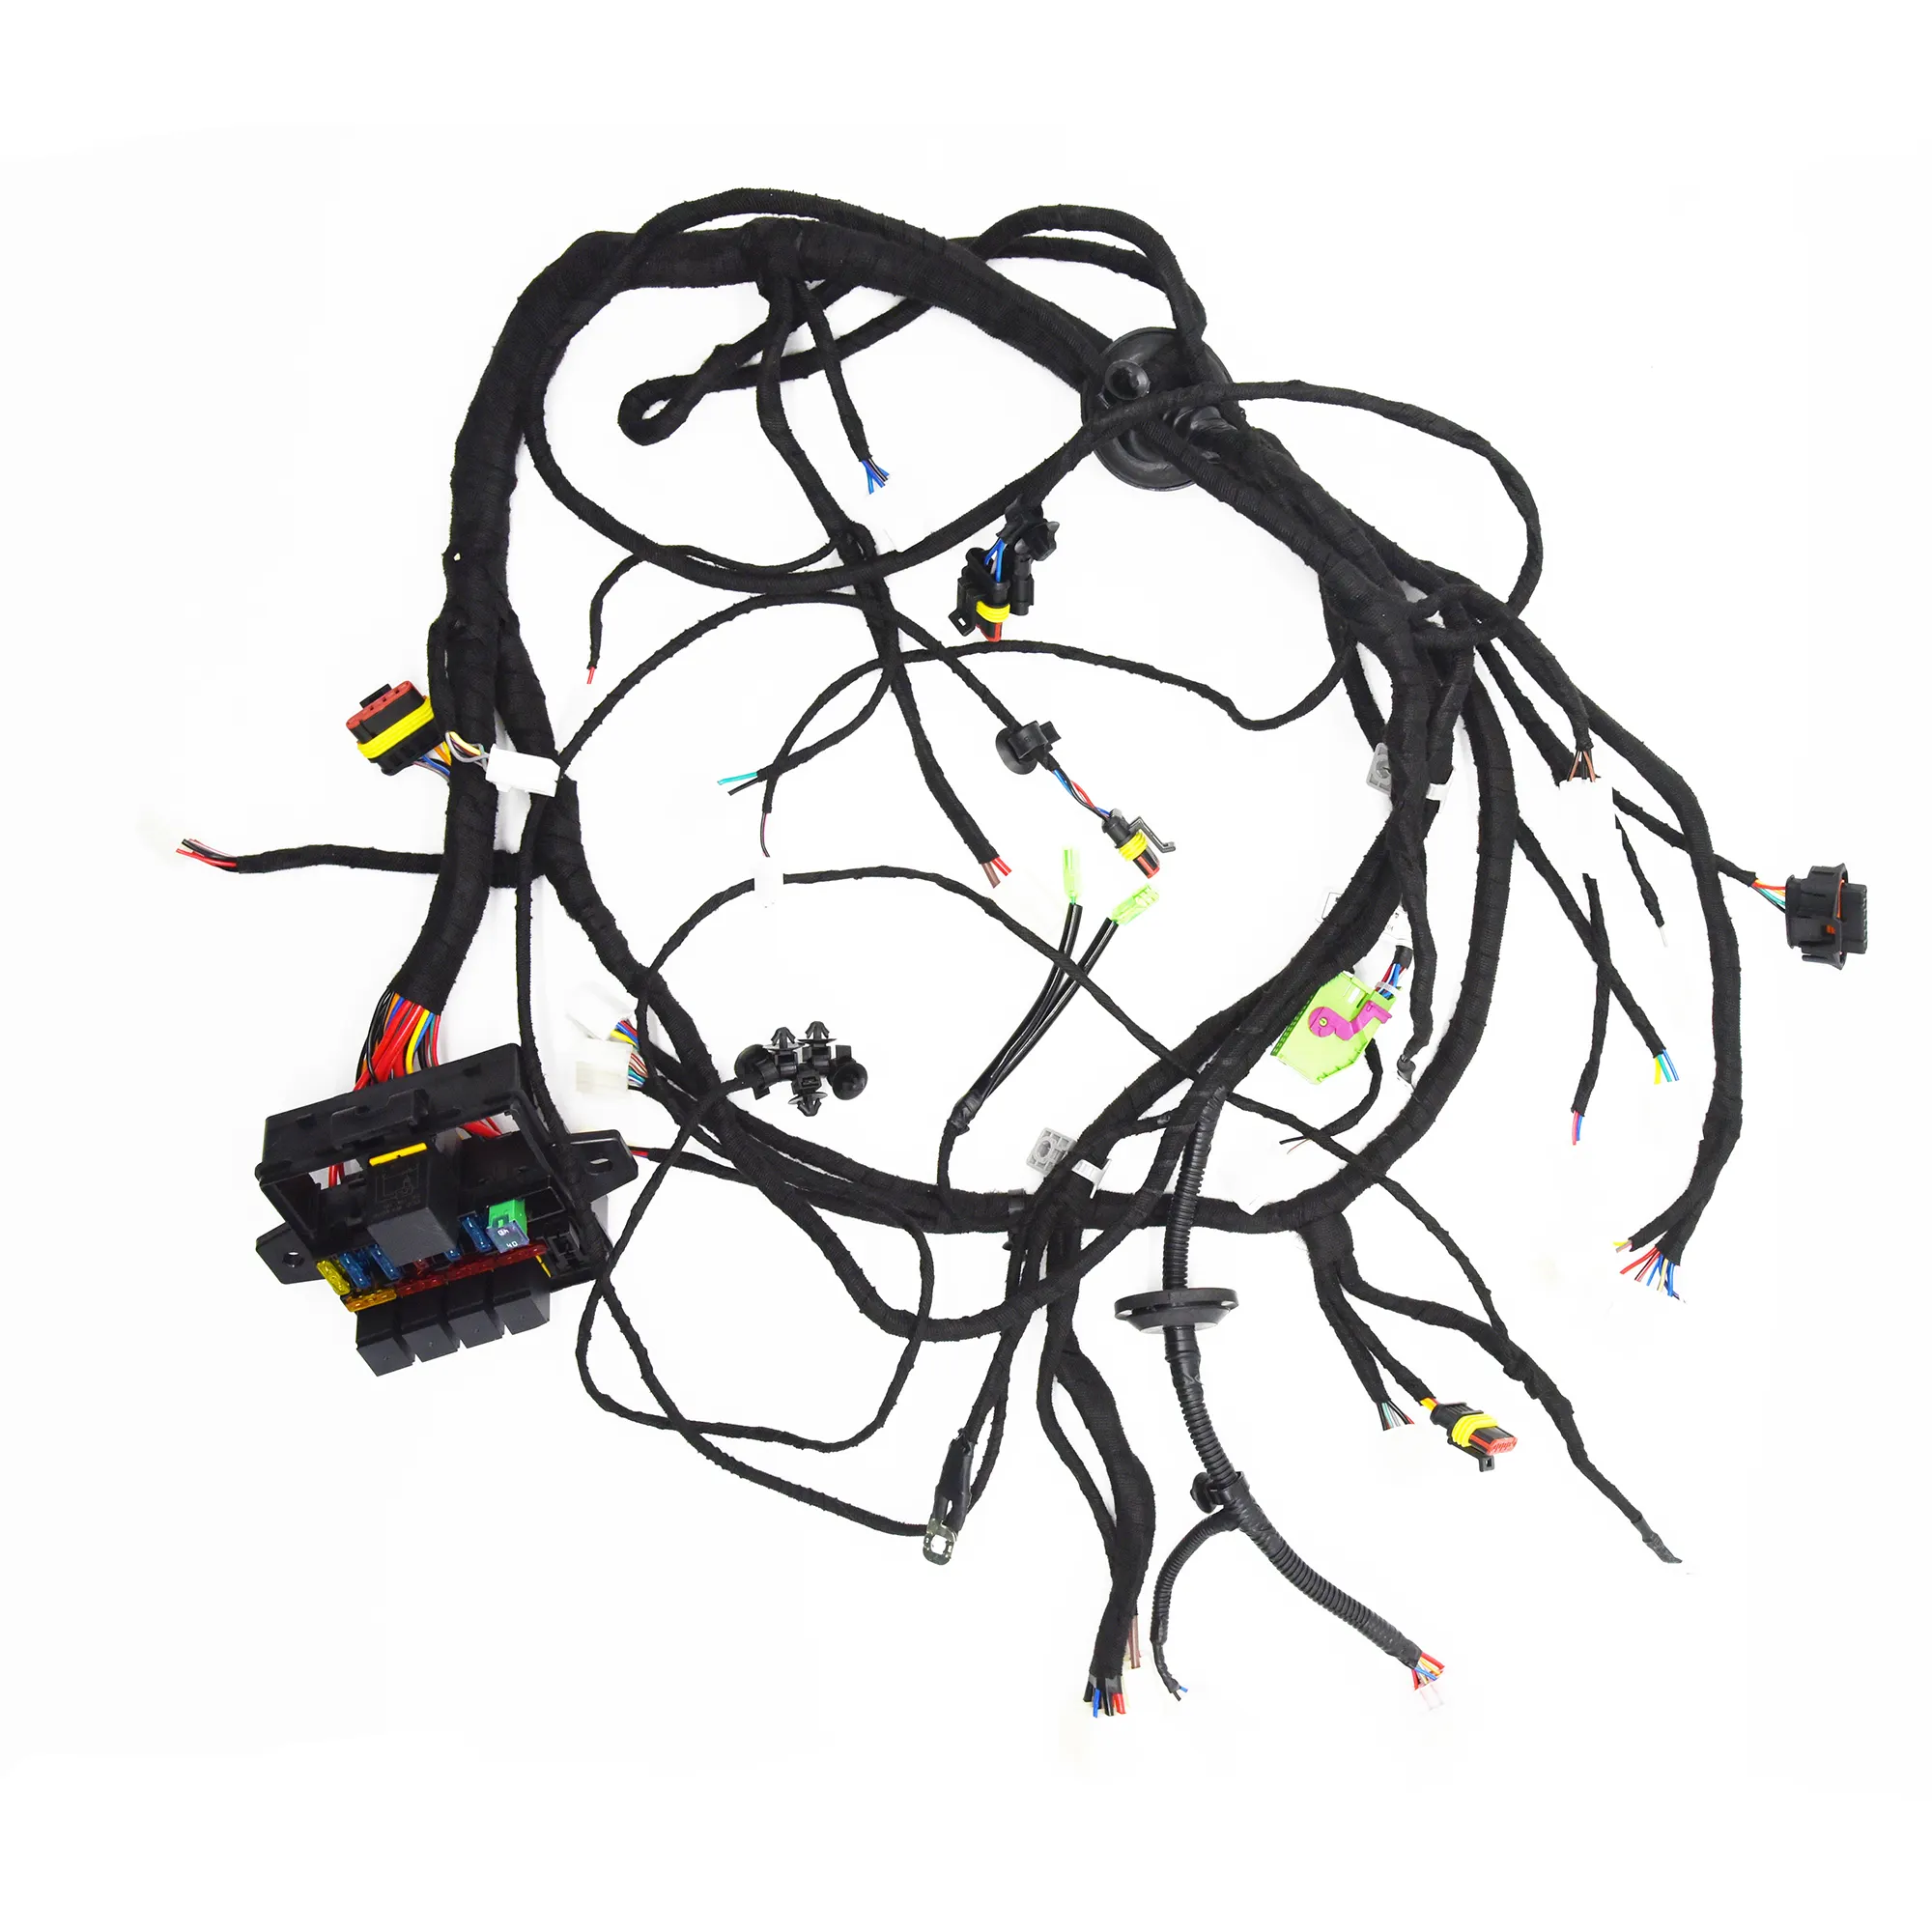 Harnes kabel untuk kontrol roda kemudi harnes kabel dengan komponen elektronik mobil 20 pin harnes kabel